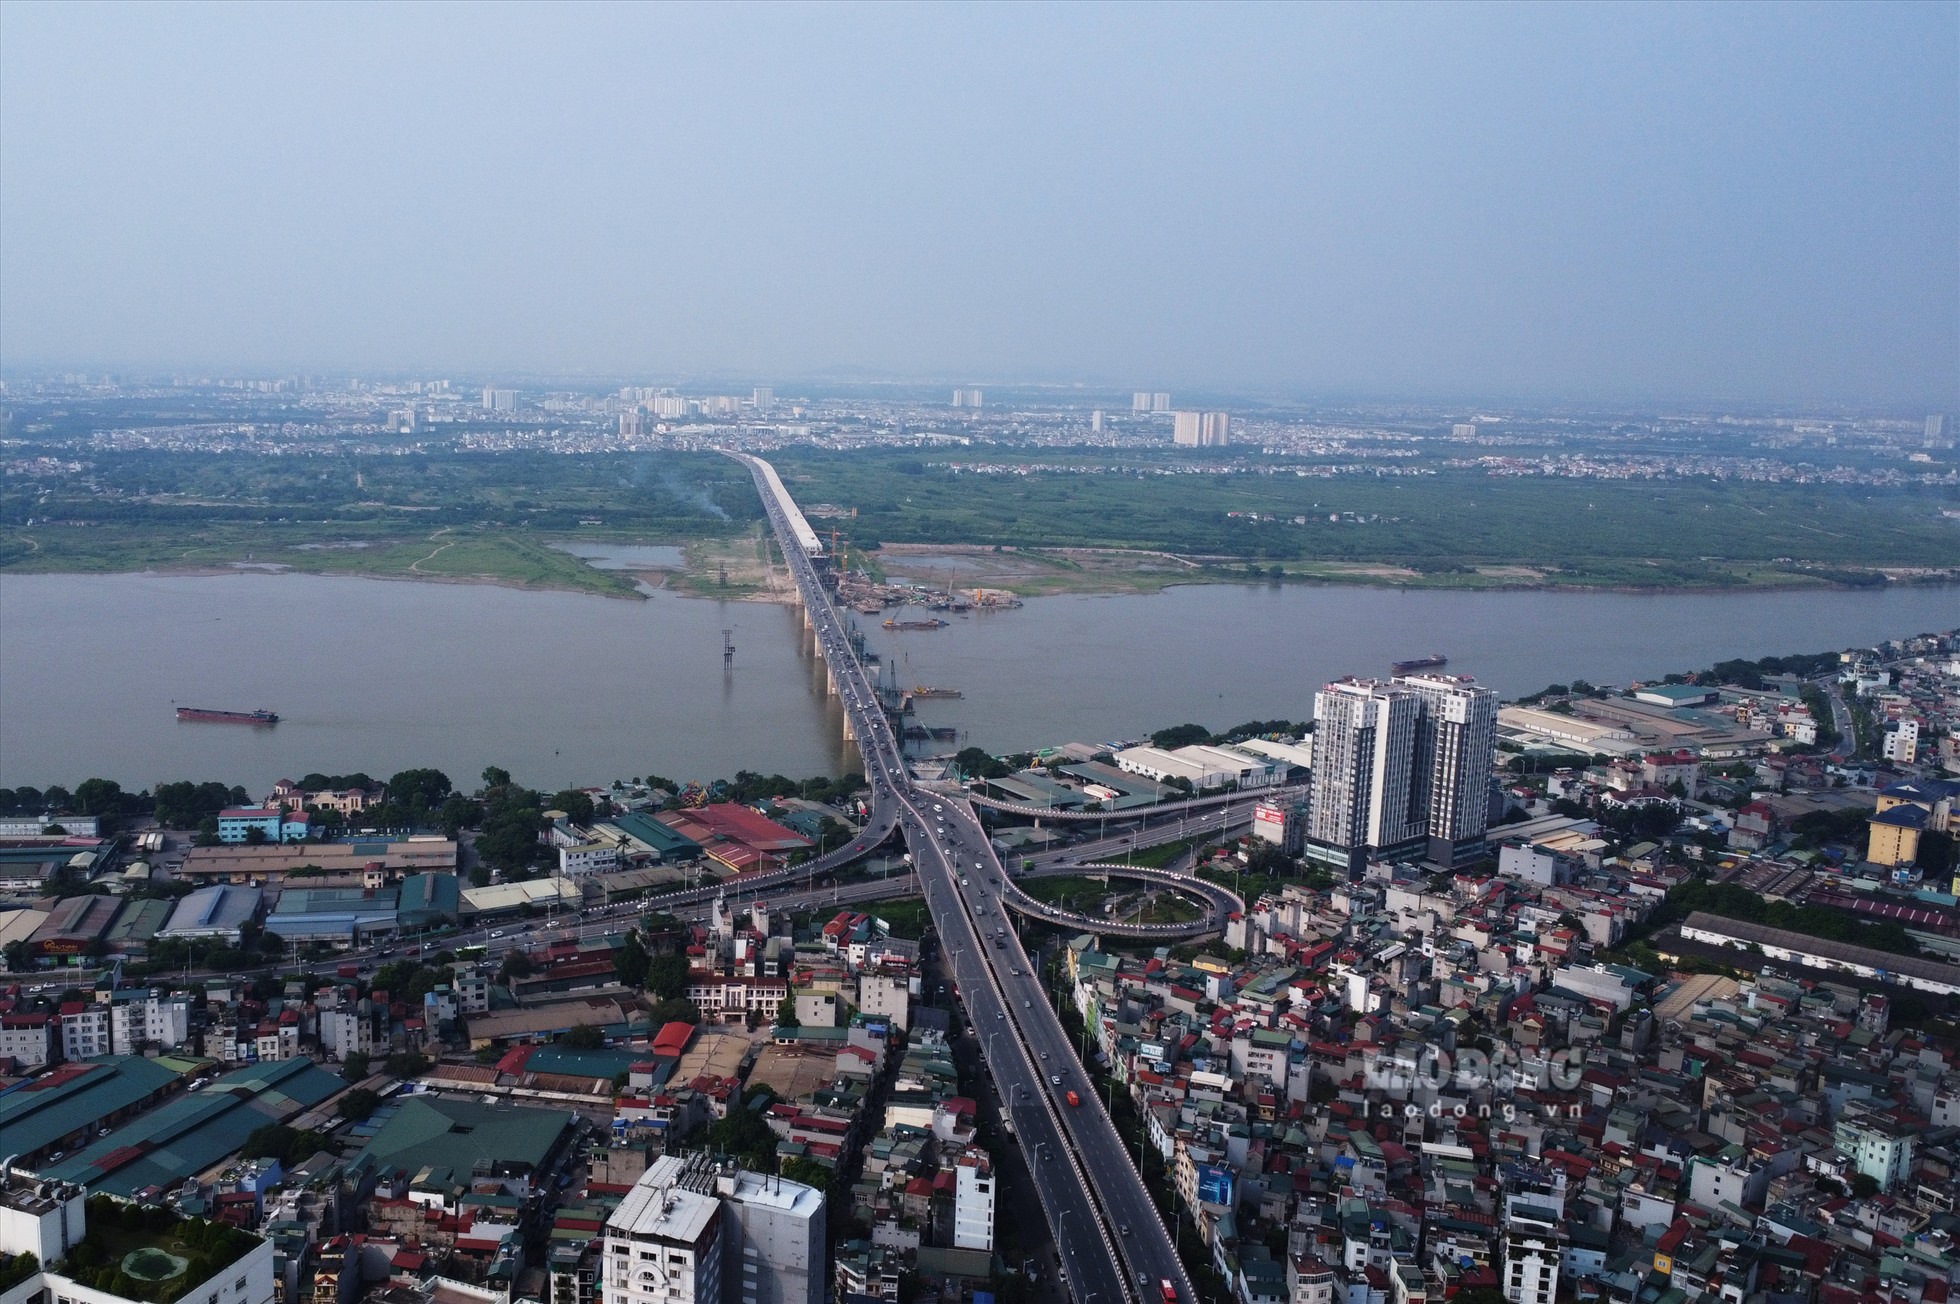 Cầu Vĩnh Tuy giai đoạn 2 là một công trình giao thông trọng điểm của Hà Nội, dự kiến sau khi hoàn thành công trình góp phần hoàn chỉnh hệ thống giao thông từ trung tâm Thủ đô tới khu vực phía Bắc và Đông Bắc thành phố.